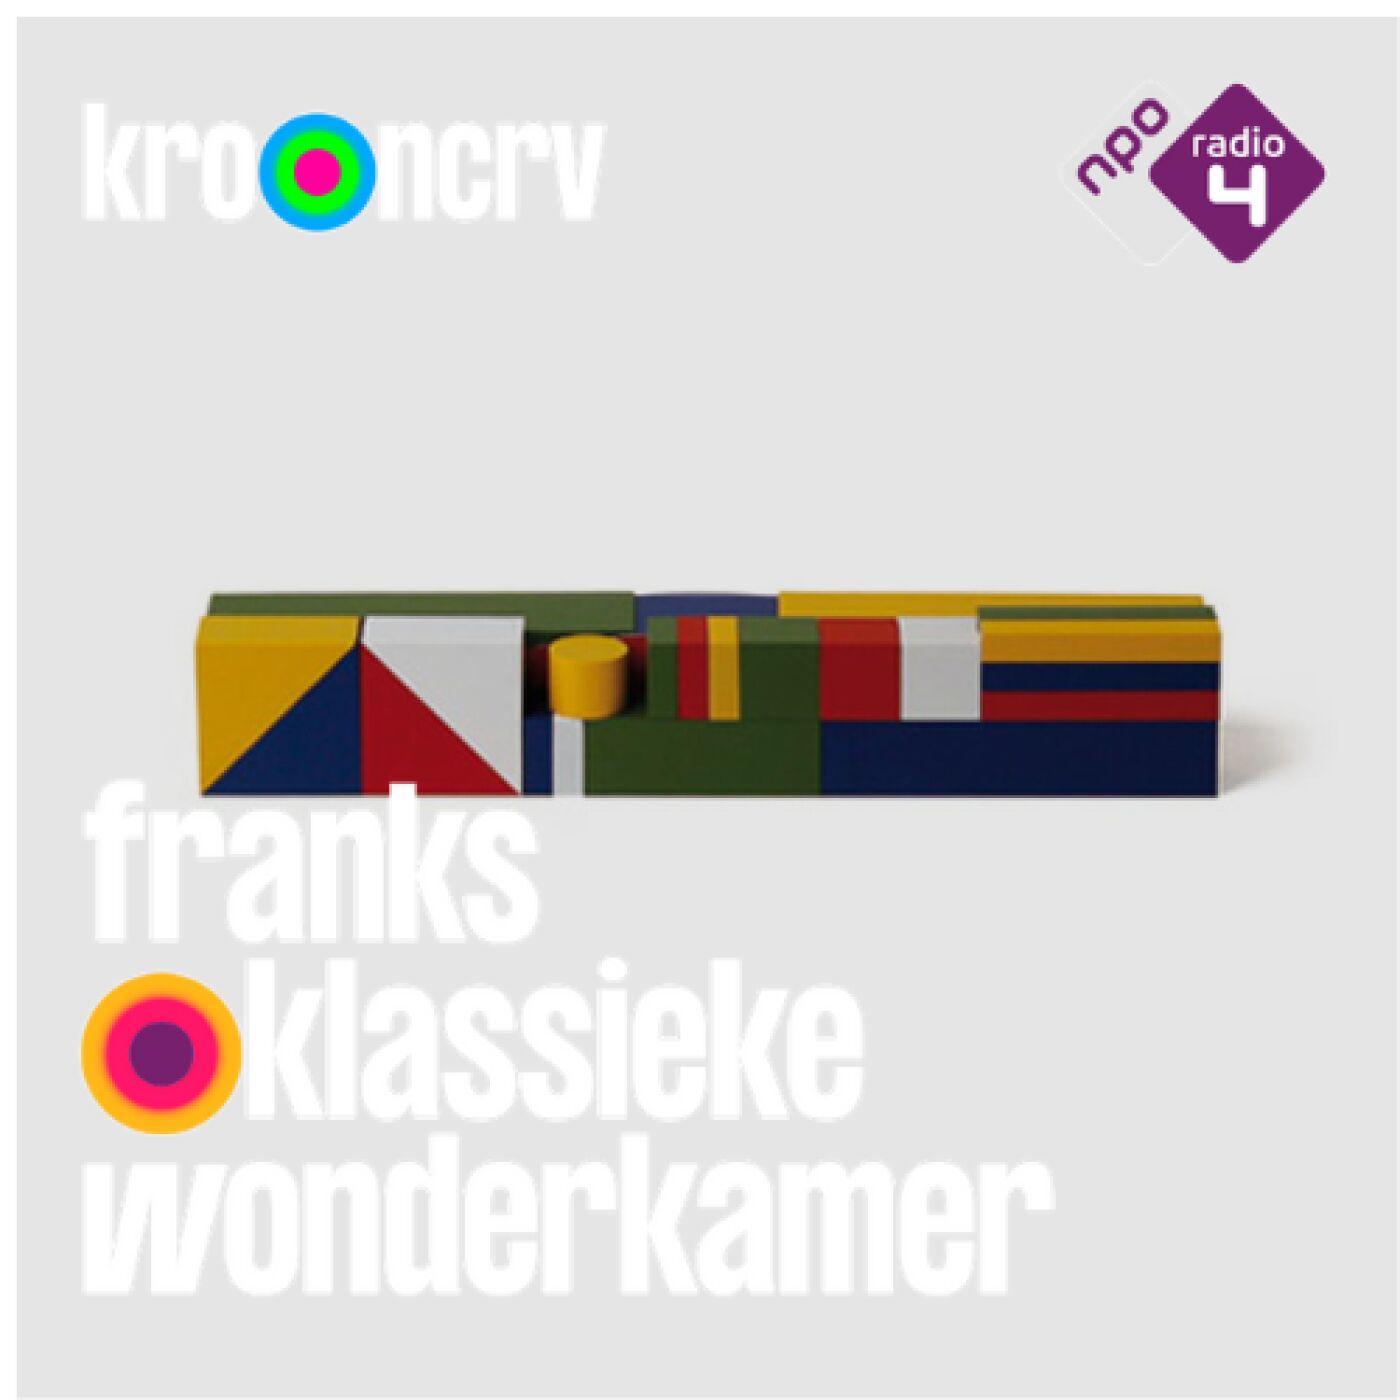 #52 - Franks Klassieke Wonderkamer - ‘Beelden van een kleine stad’